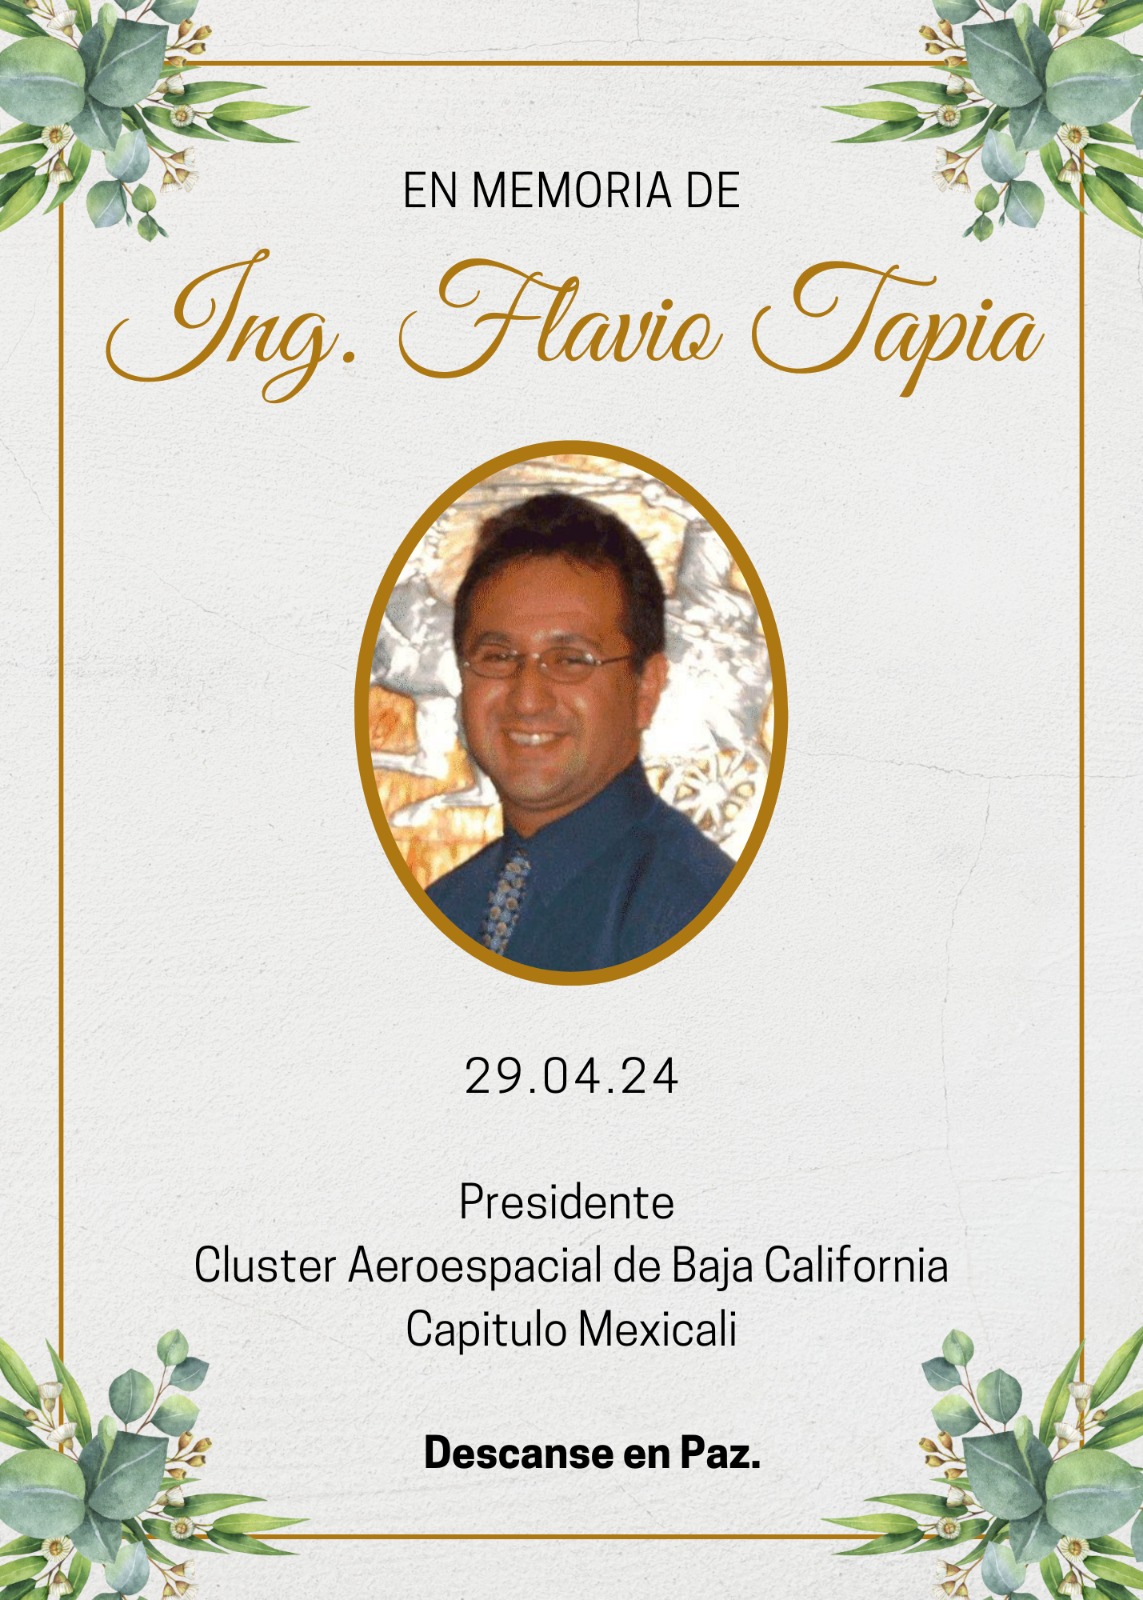 Con profundo dolor informamos el sensible fallecimiento de Flavio Tapia, Presidente del Cluster Aeroespacial de Baja California, Capitulo Mexicali.